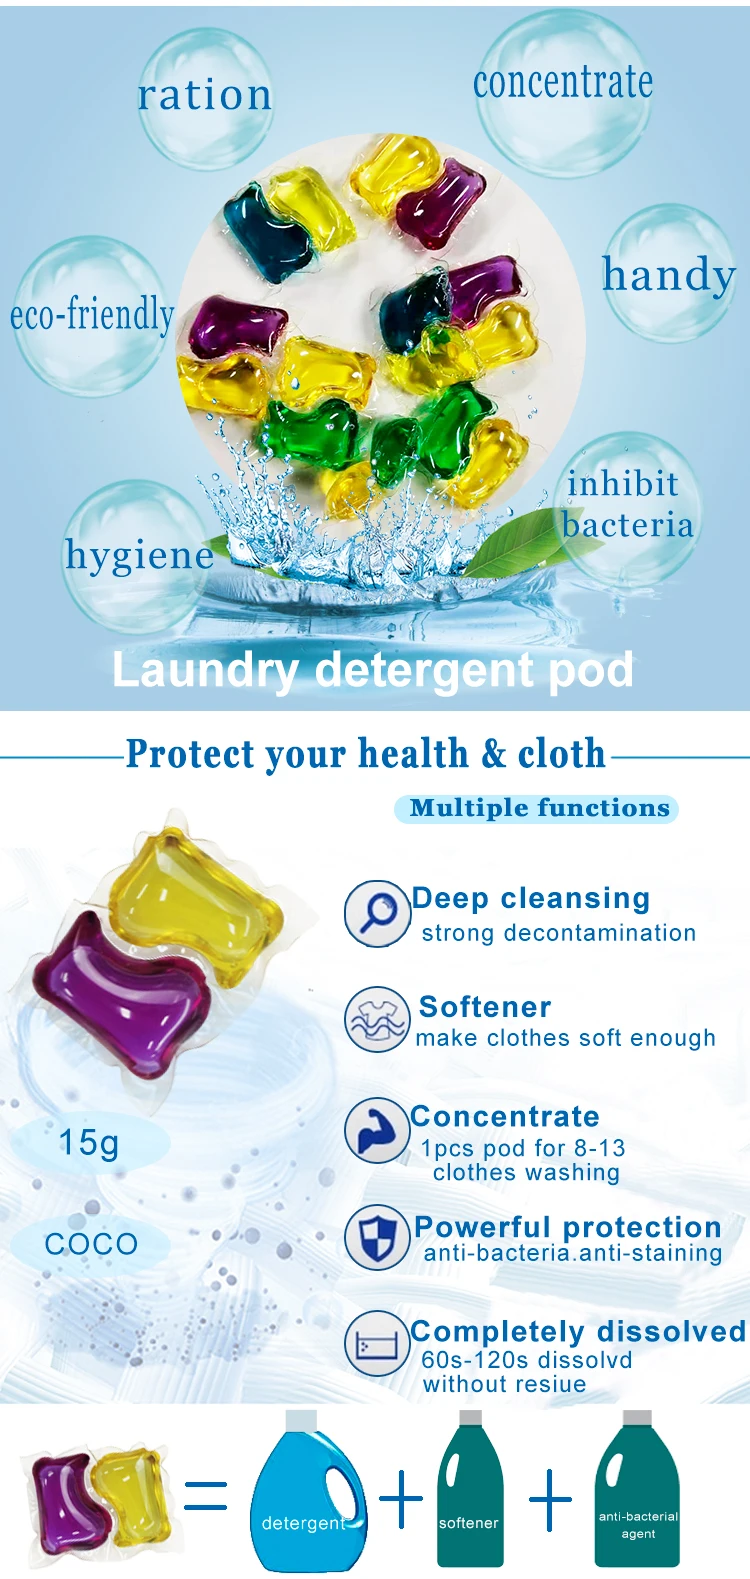 laboratoire pour recette detergent liquid for clothes washing laundry liquid pods pva detergent manufacturers